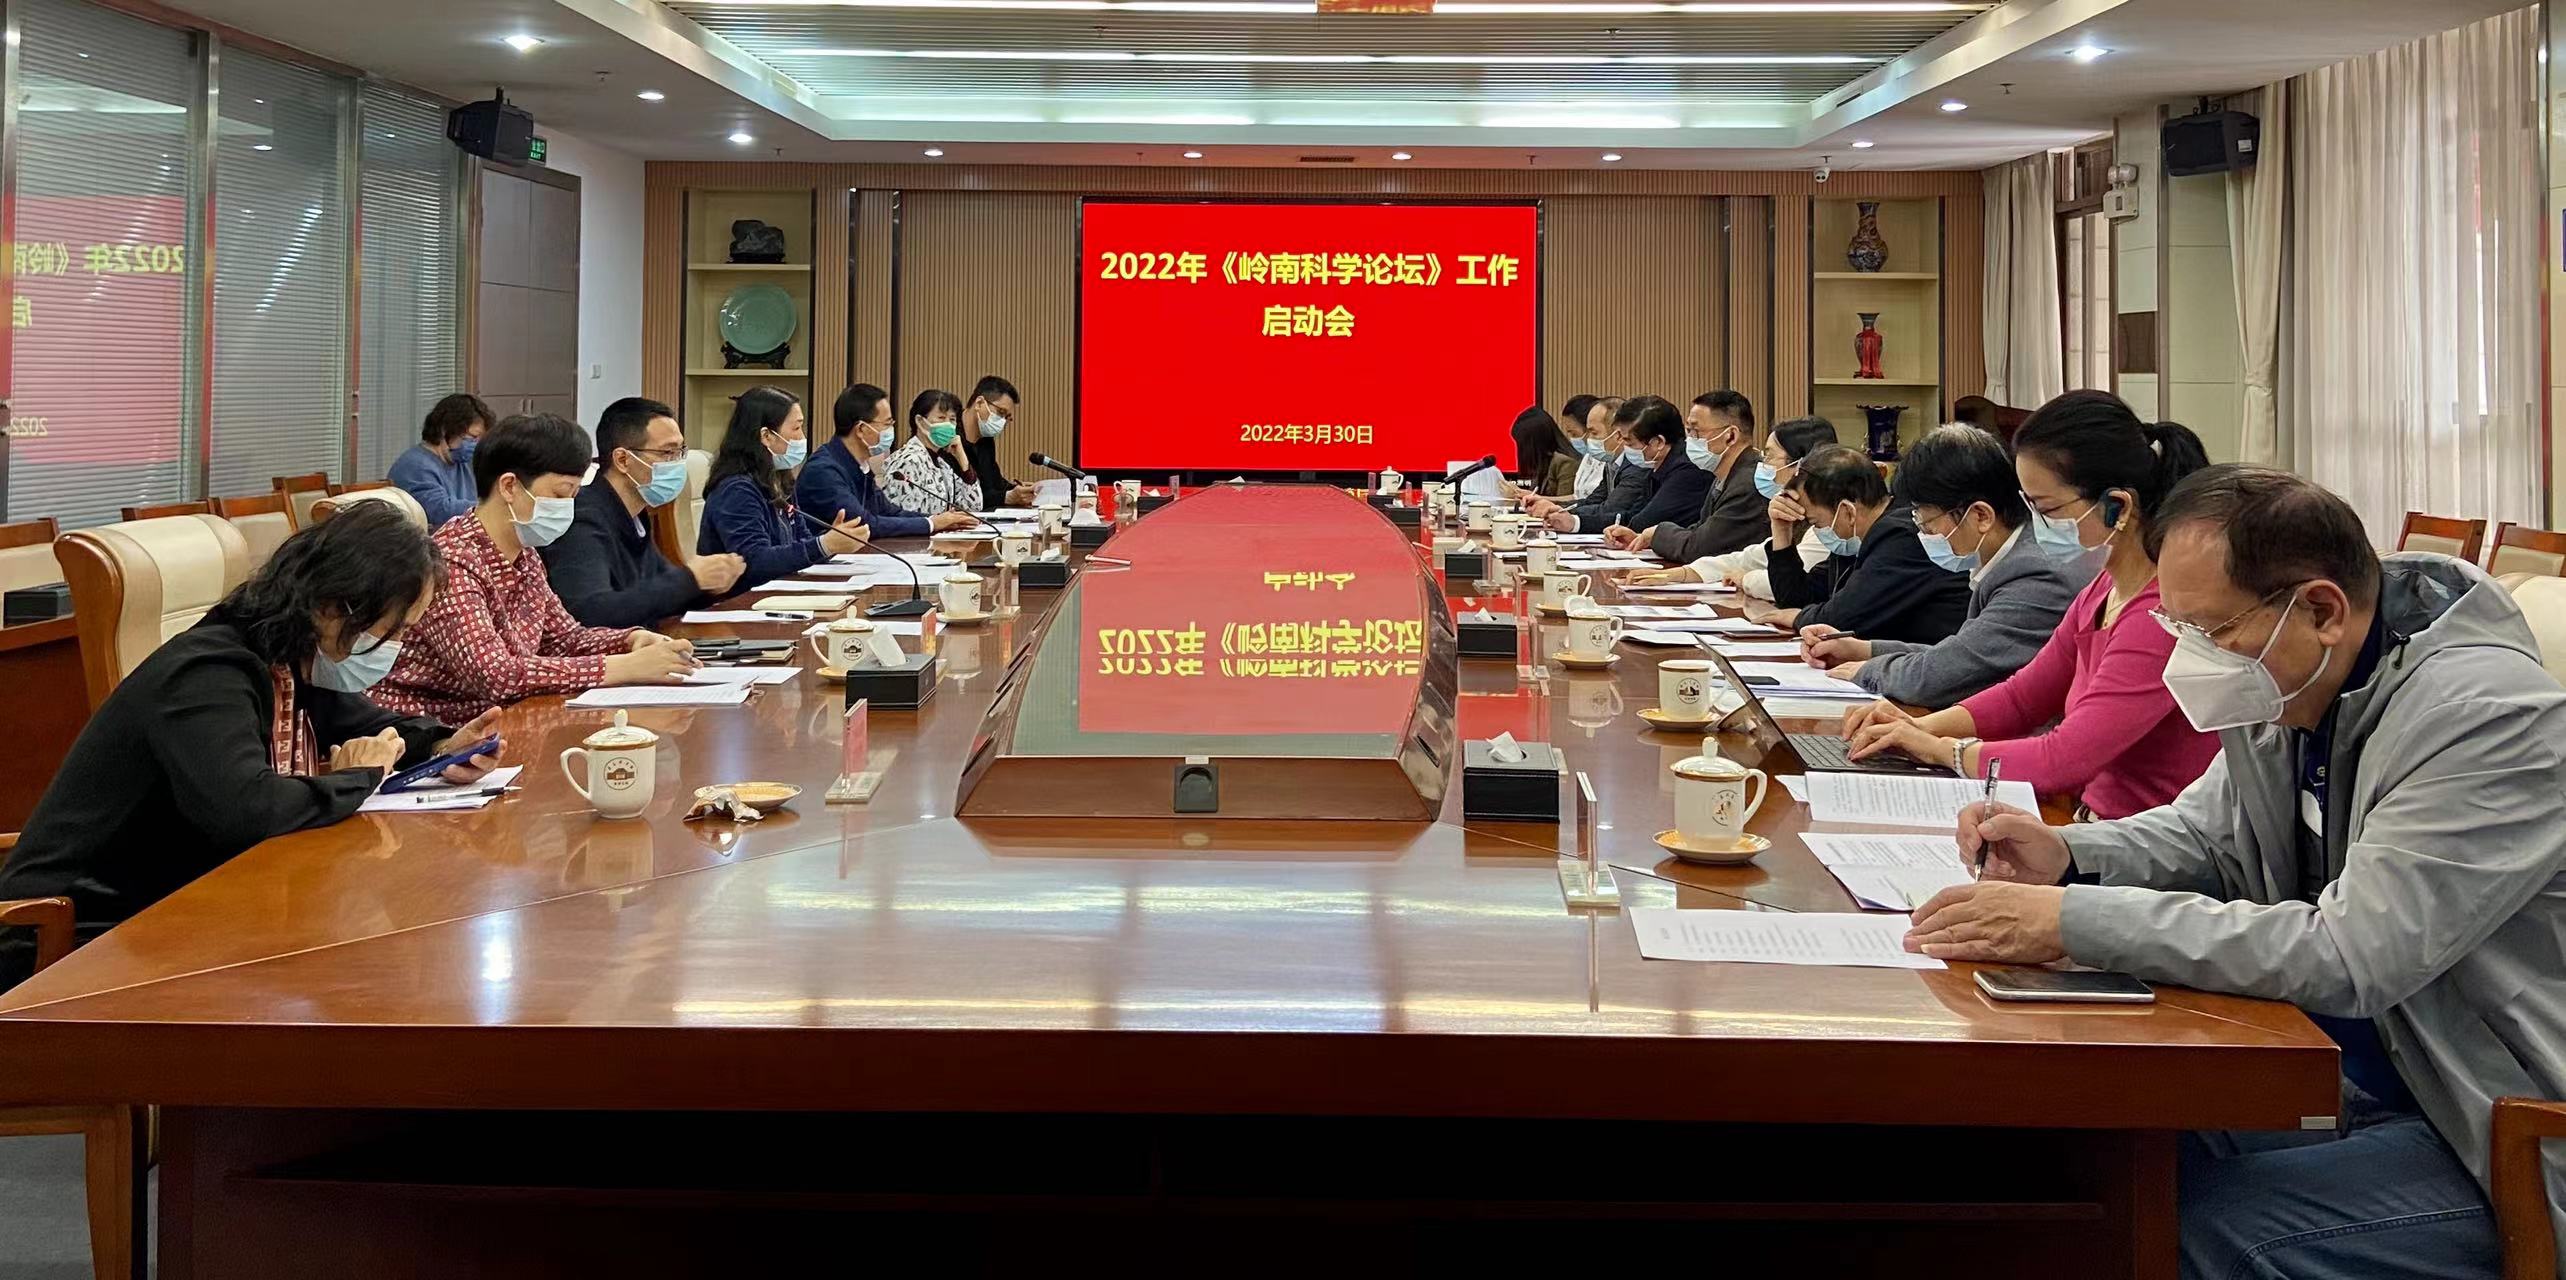 2022年岭南科学论坛在广东正式启动 